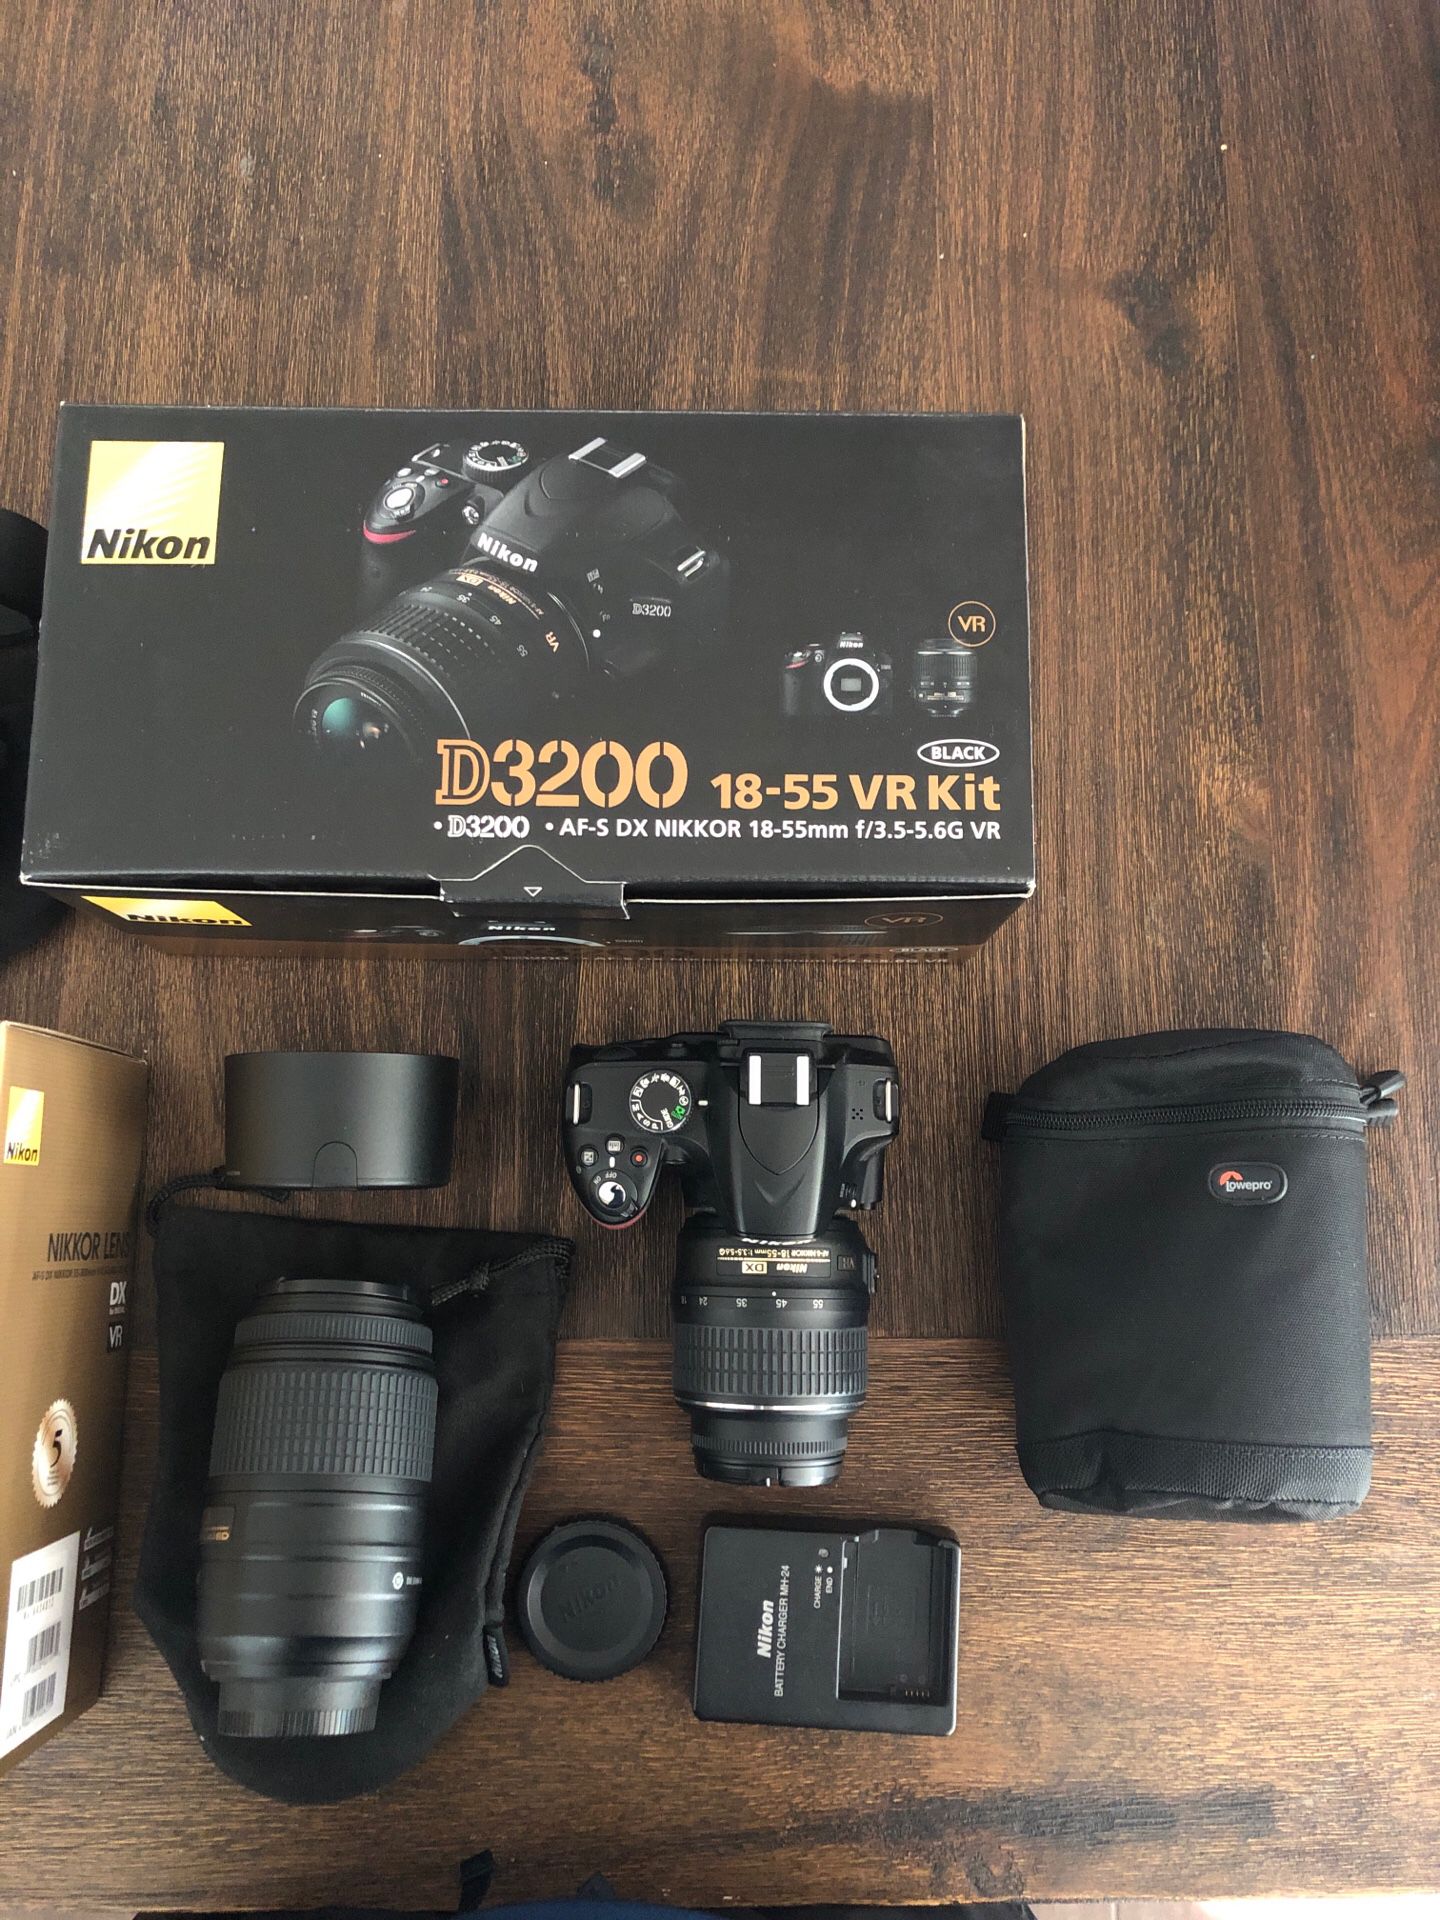 Nikon D3200 18-55 VR Kit + 3 Additional Lenses